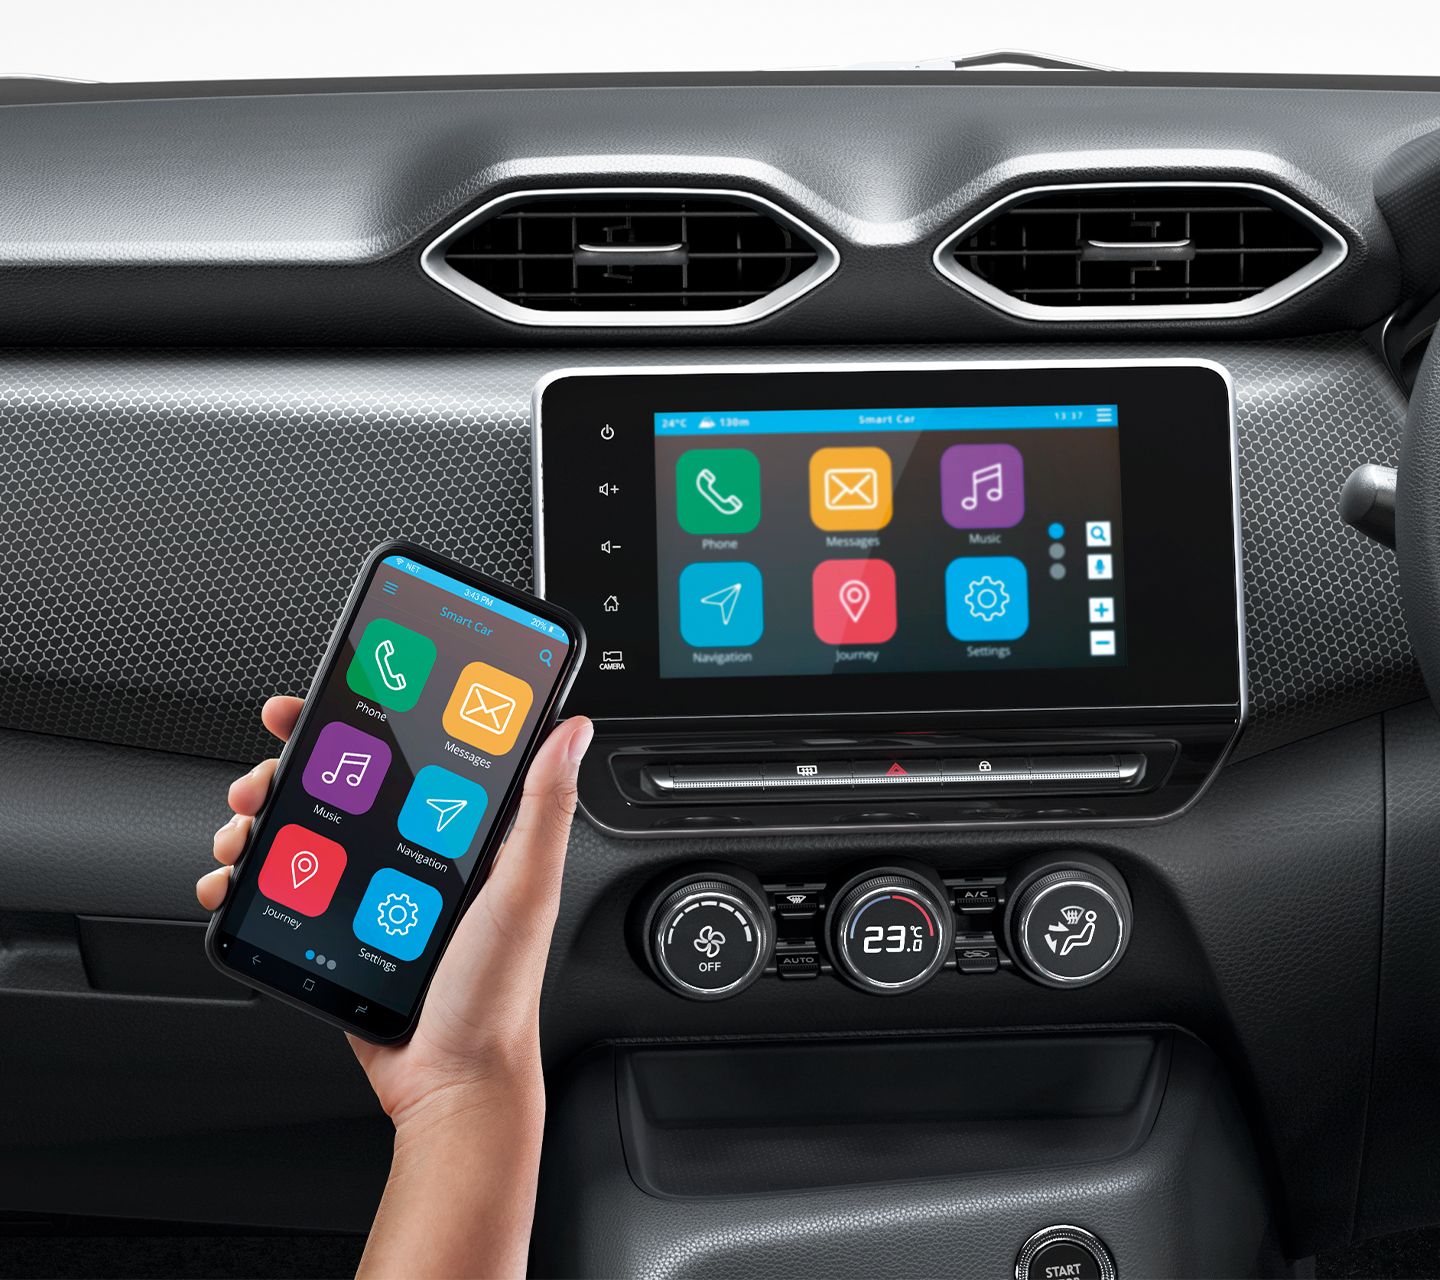 Nissan Magnite च्या केबिनच्या प्रीमियम फीचर्समध्ये Android Auto व Apple CarPlay ला सपोर्ट करणारी 8 इंच टचस्क्रीन इन्फोटेन्मेंट सिस्टिम, सेगमेंट फर्स्ट 360 डिग्री अराउंड व्यू मॉनिटर, इन बिल्ट टायर प्रेशर मॉनिटर, 7 इंच टीएफटी इंस्टूमेंट क्लस्टर अशा फिचर्सचा समावेश आहे. याशिवाय व्हॉइस रिकग्निशन, ऑटोमॅटिक एसी, क्रूज कंट्रोल, हाइट अॅडजस्टेबल ड्रायव्हर सीट हे फिचर्सही आहेत.